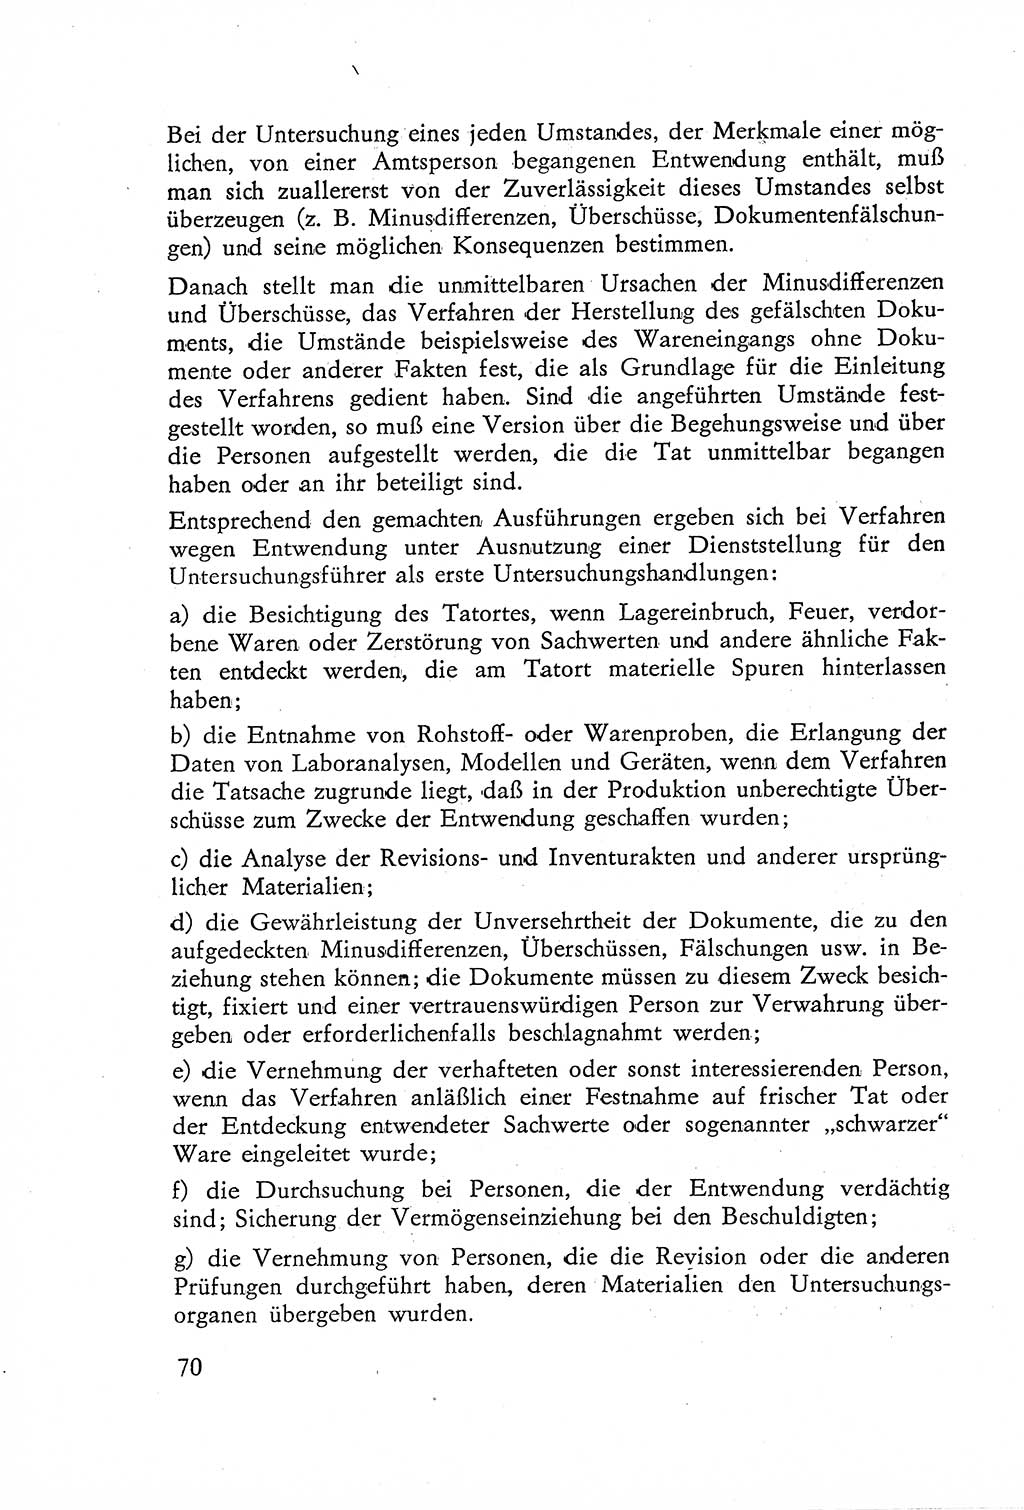 Die Untersuchung einzelner Verbrechensarten [Deutsche Demokratische Republik (DDR)] 1960, Seite 70 (Unters. Verbr.-Art. DDR 1960, S. 70)